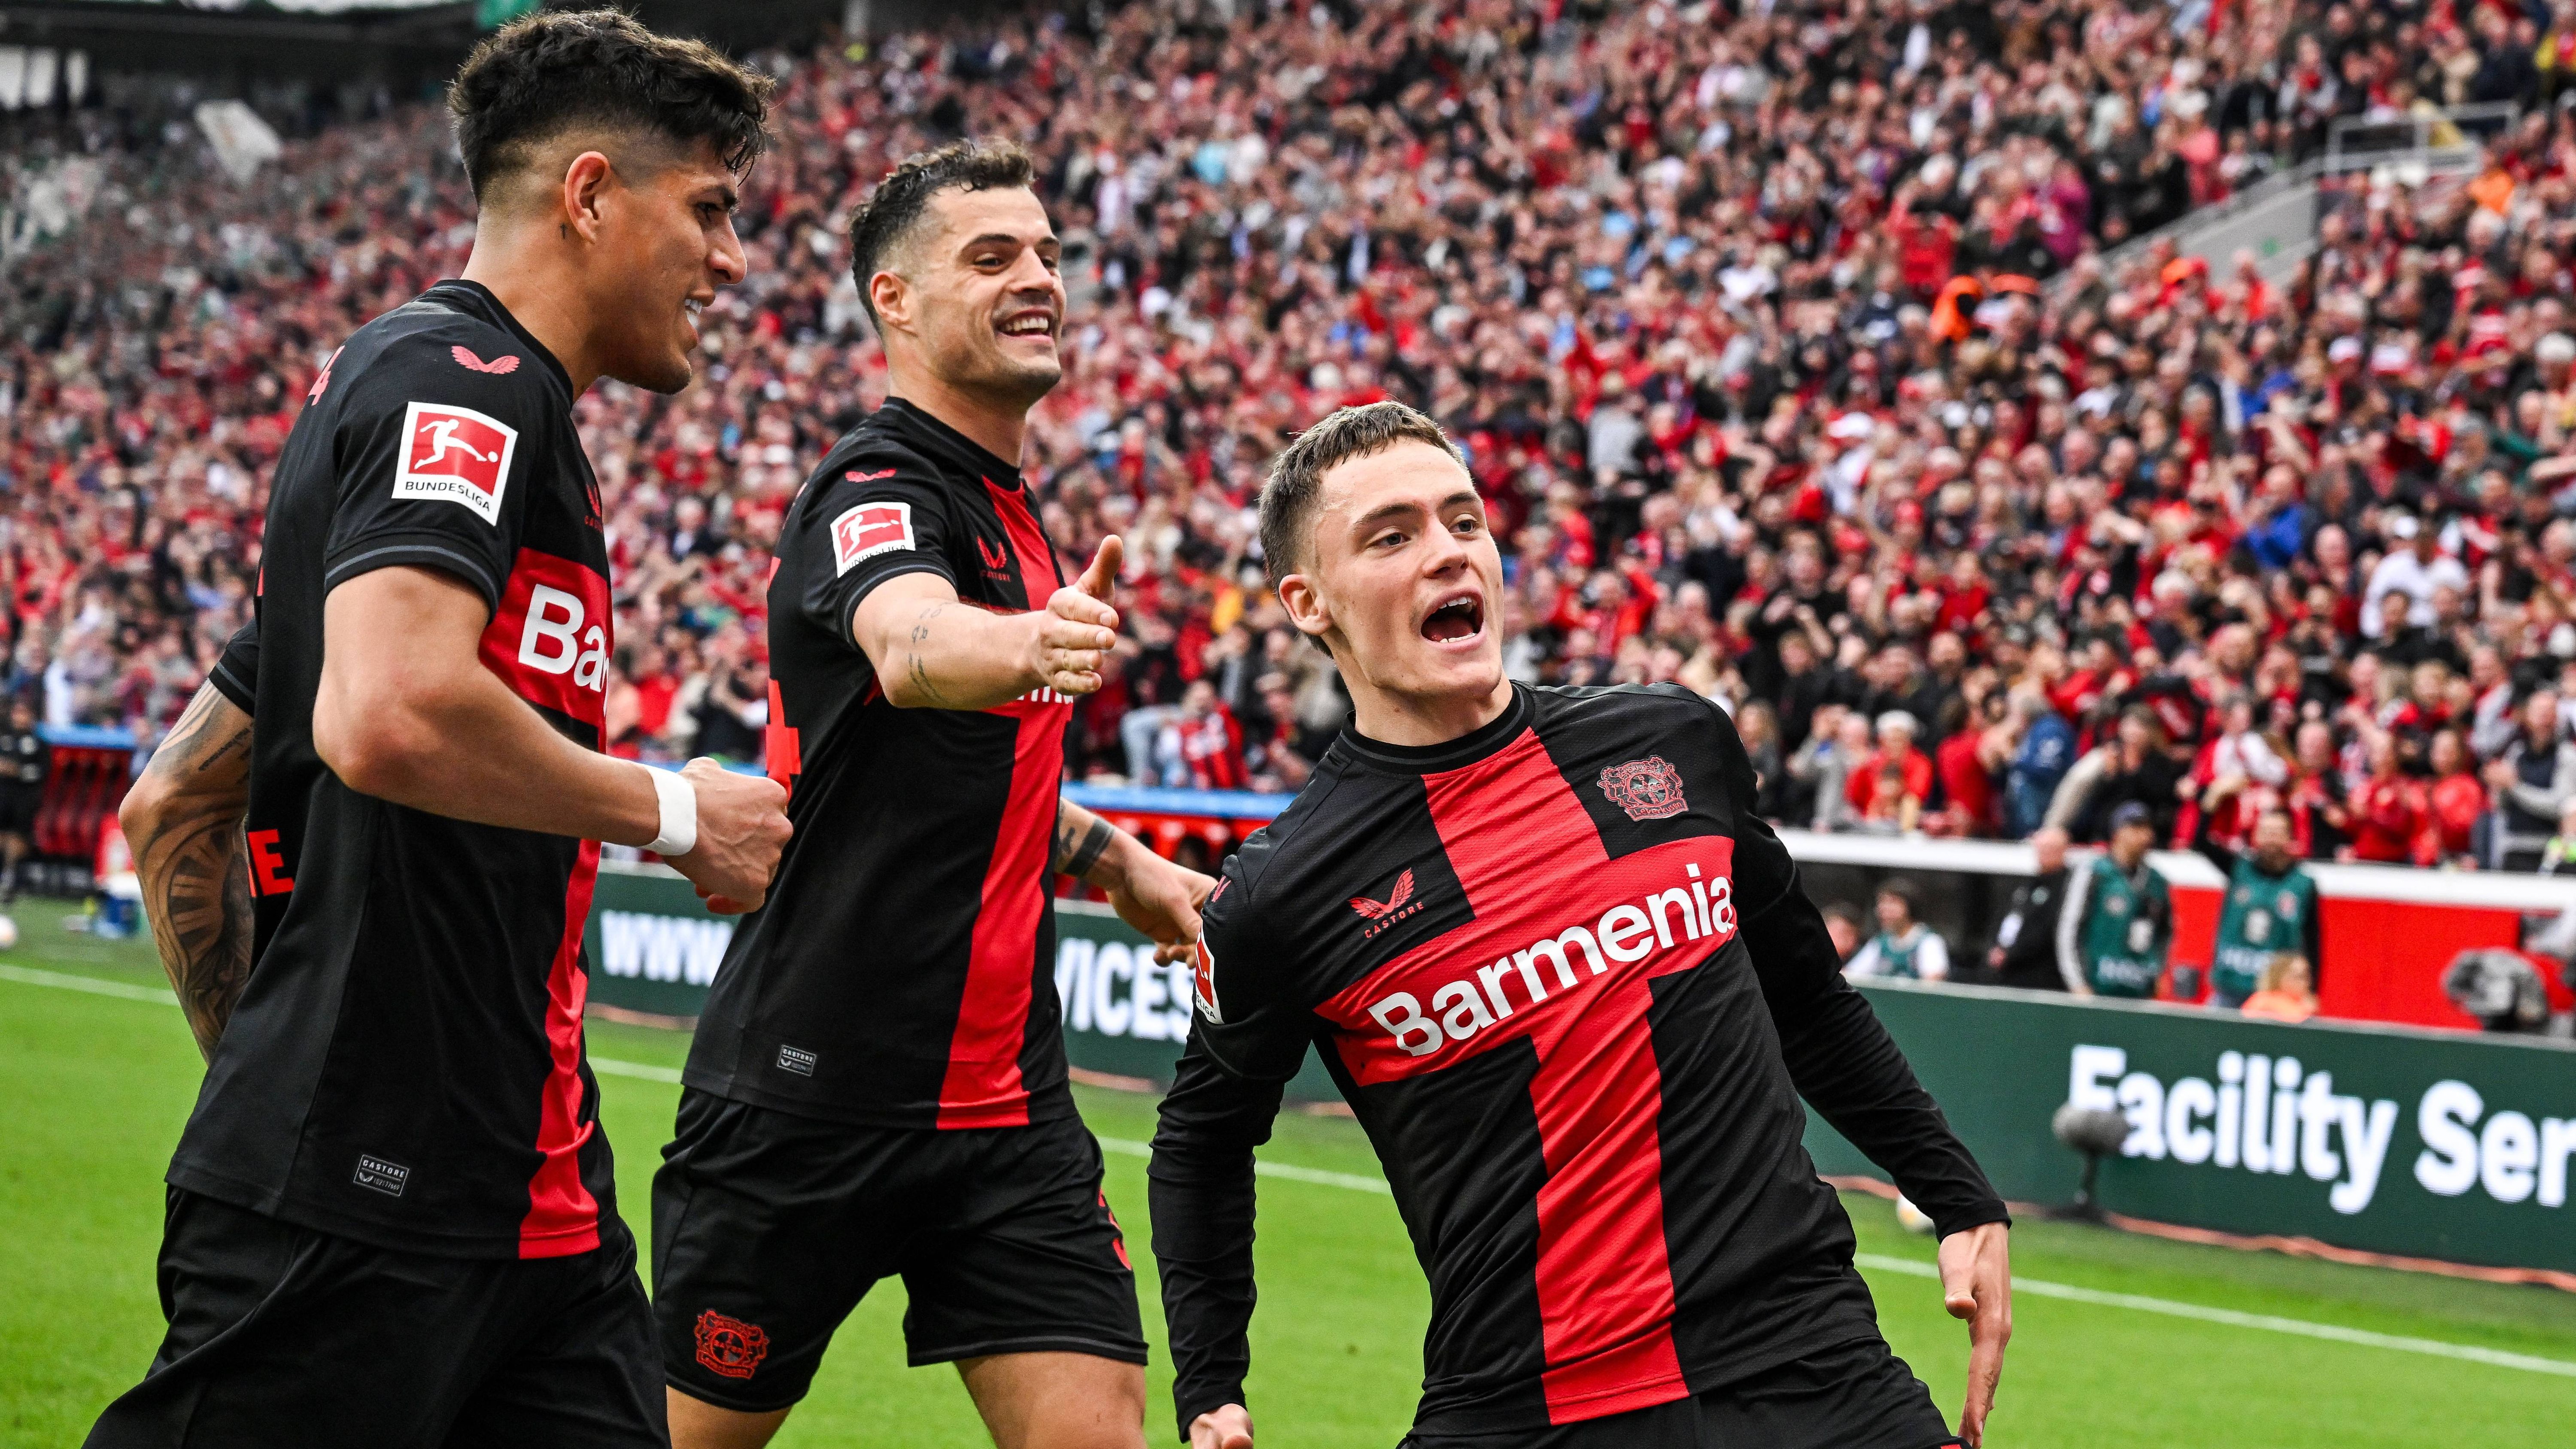 <strong>Deutschland</strong><br>Bayer Leverkusen ist erstmals Deutscher Meister. Mit einem fulminanten 5:0 über Werder Bremen sicherte sich die Mannschaft von Trainer Xabi Alonso am 29. Spieltag vorzeitig den Titel ...&nbsp;